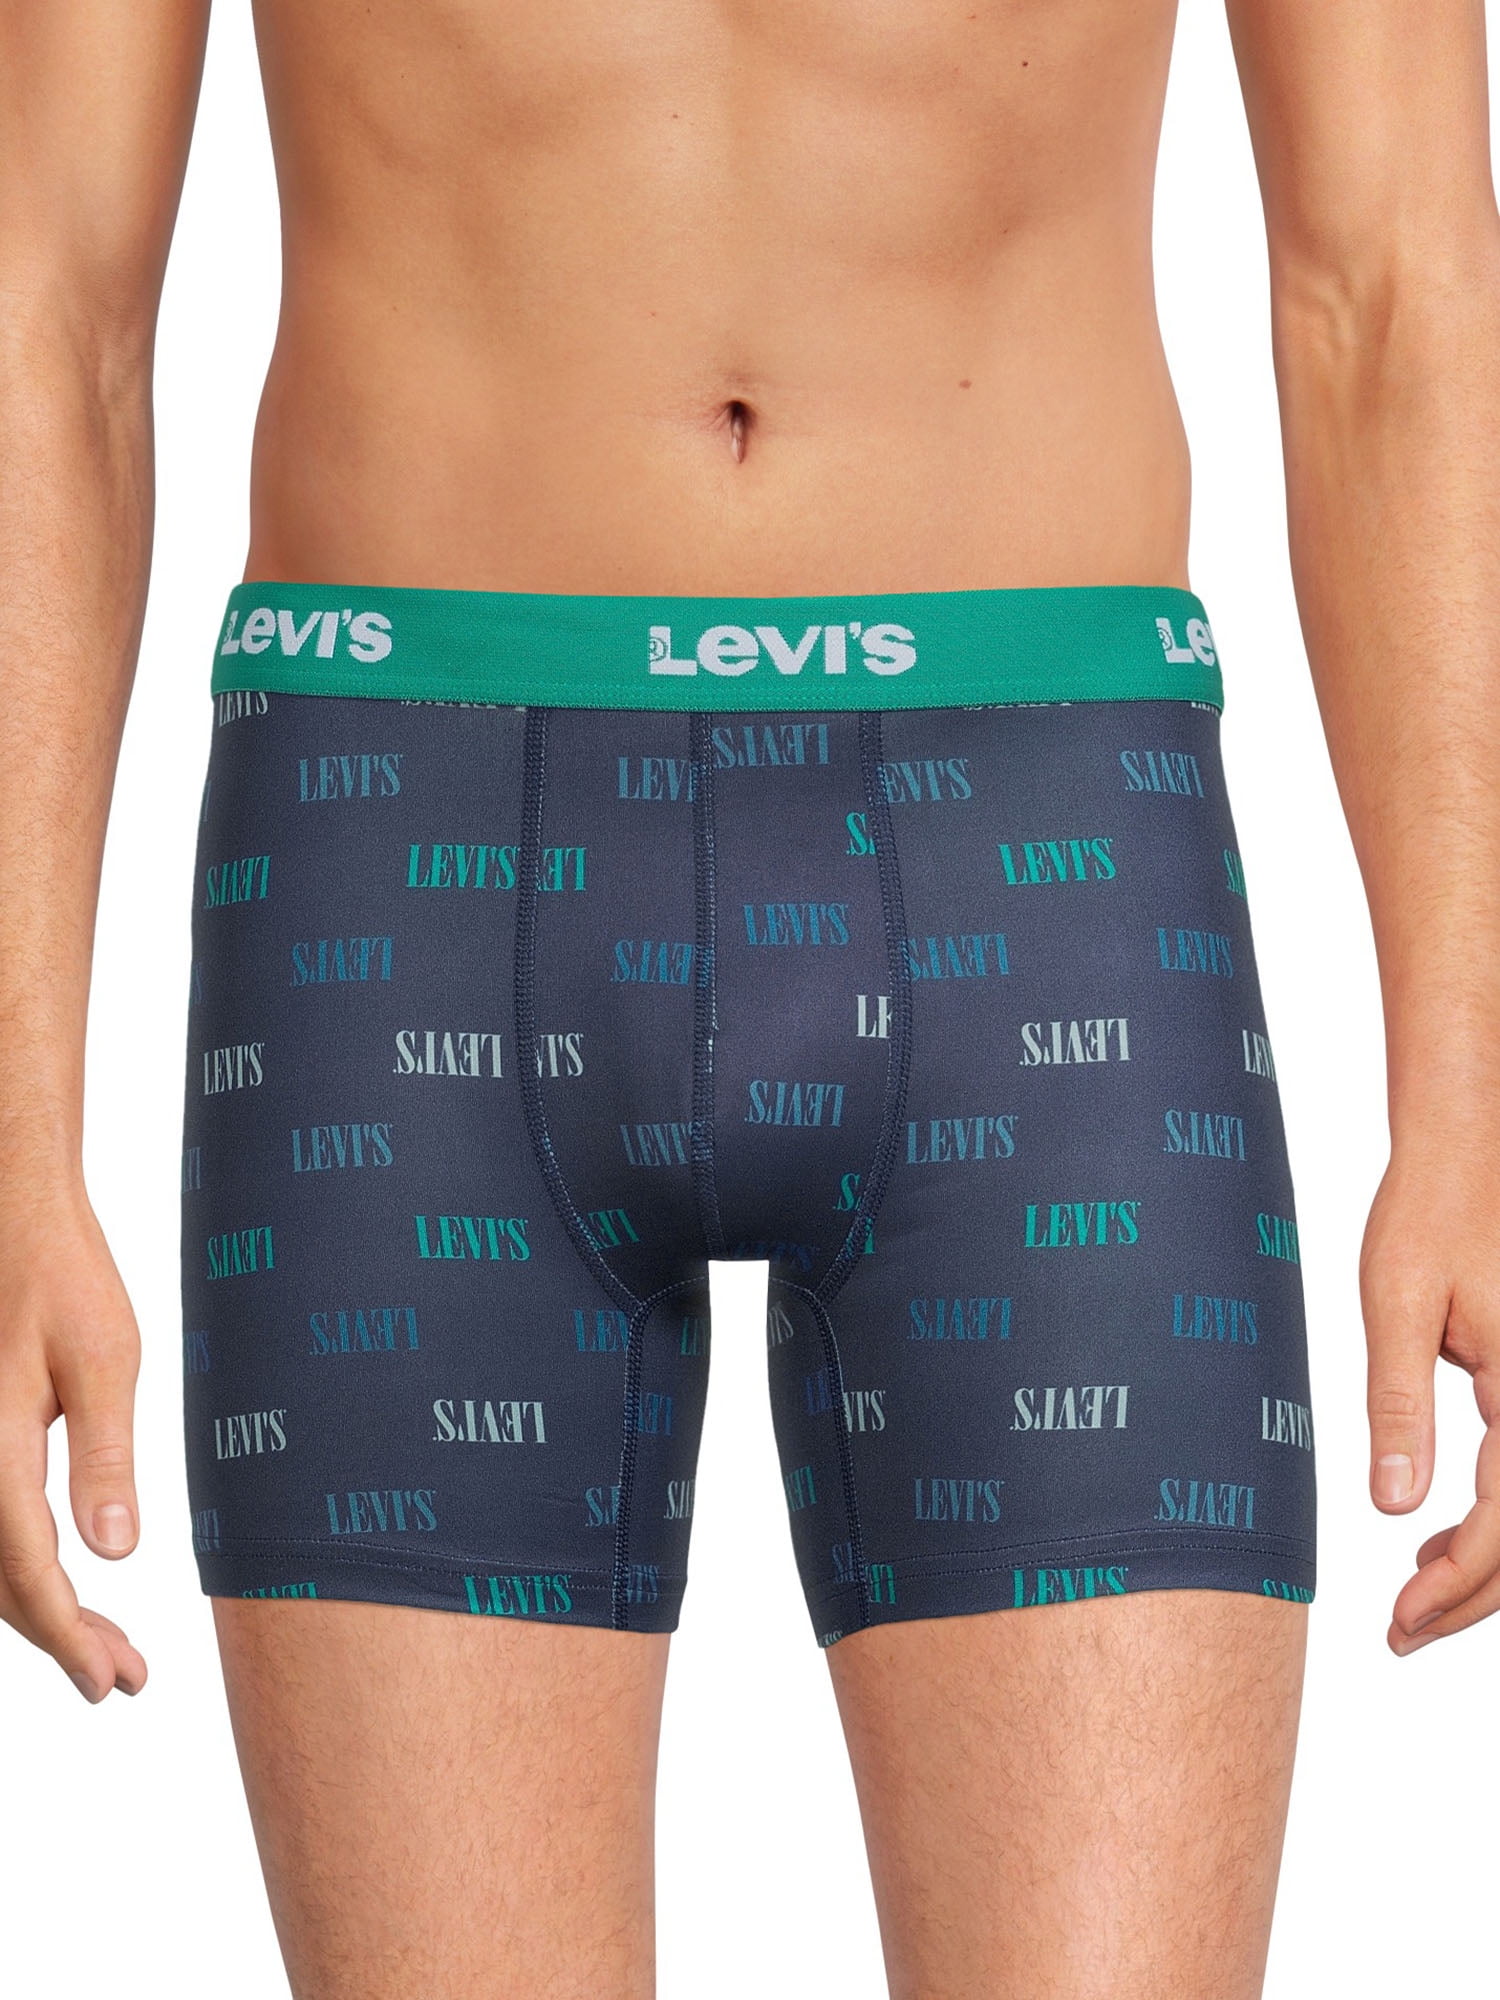 Levi's 4-Pack Adult Mens Boxer Briefs, Sizes S-XL - Walmart.com